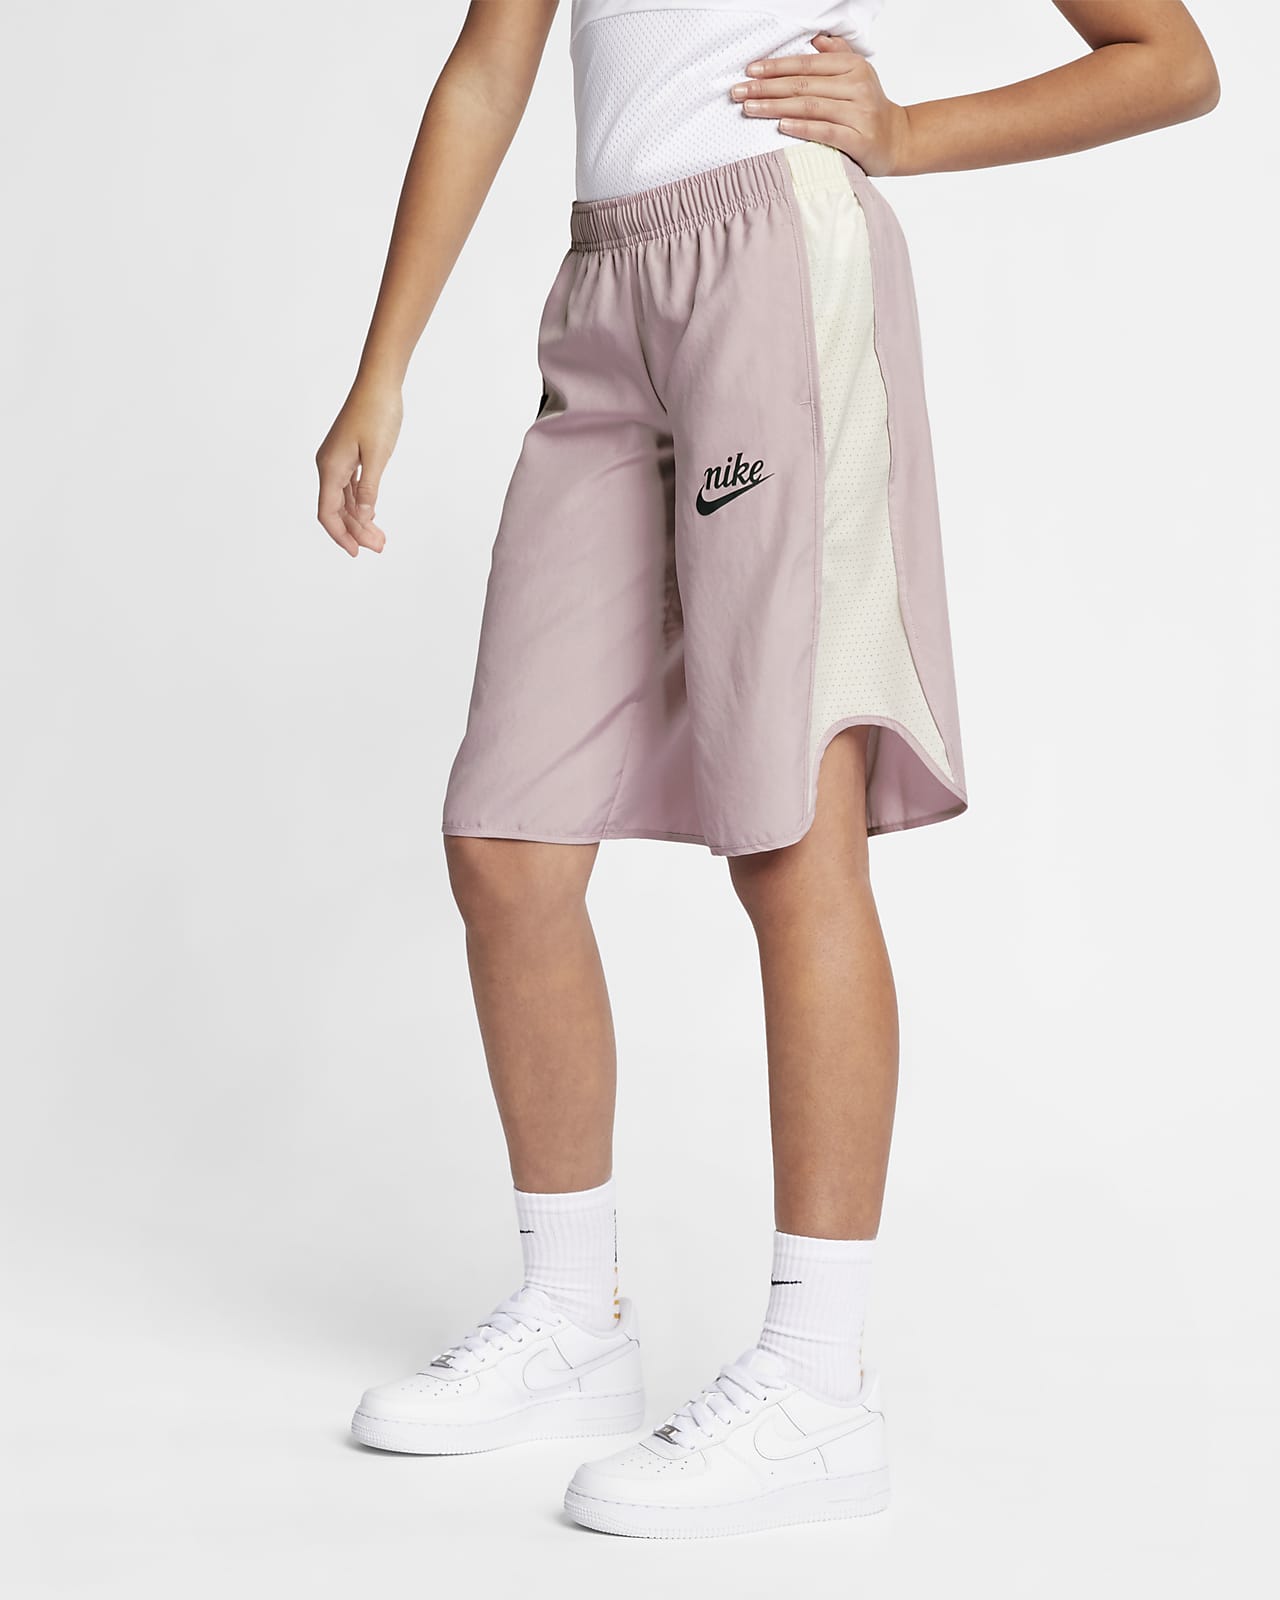 Nike Sportswear Older Kids' (Girls') Culottes